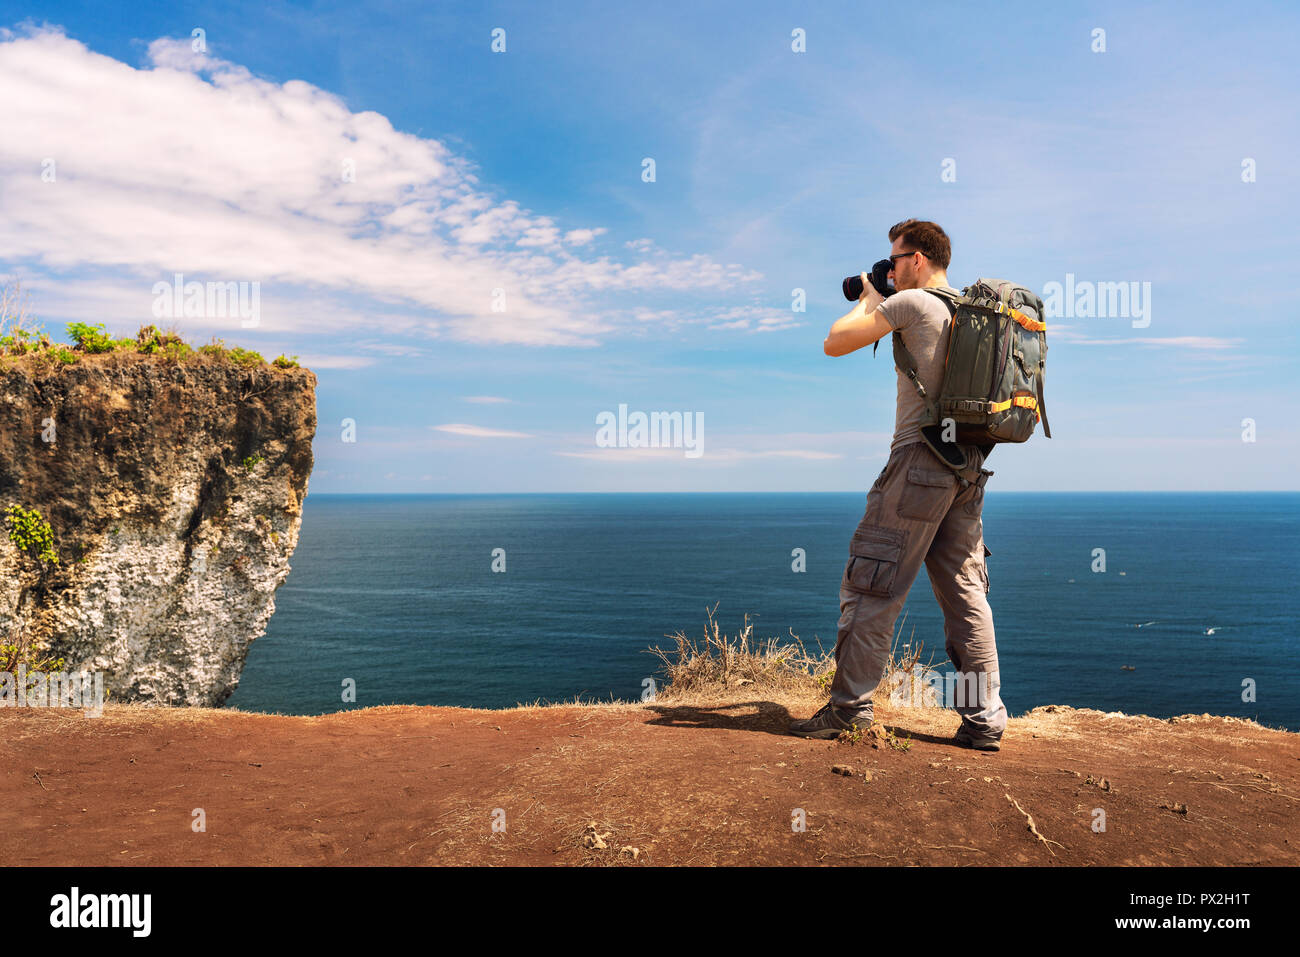 Photographe avec appareil photo en main taking photo nature paysage montagne sur falaise. Vie de voyage hobby concept Banque D'Images